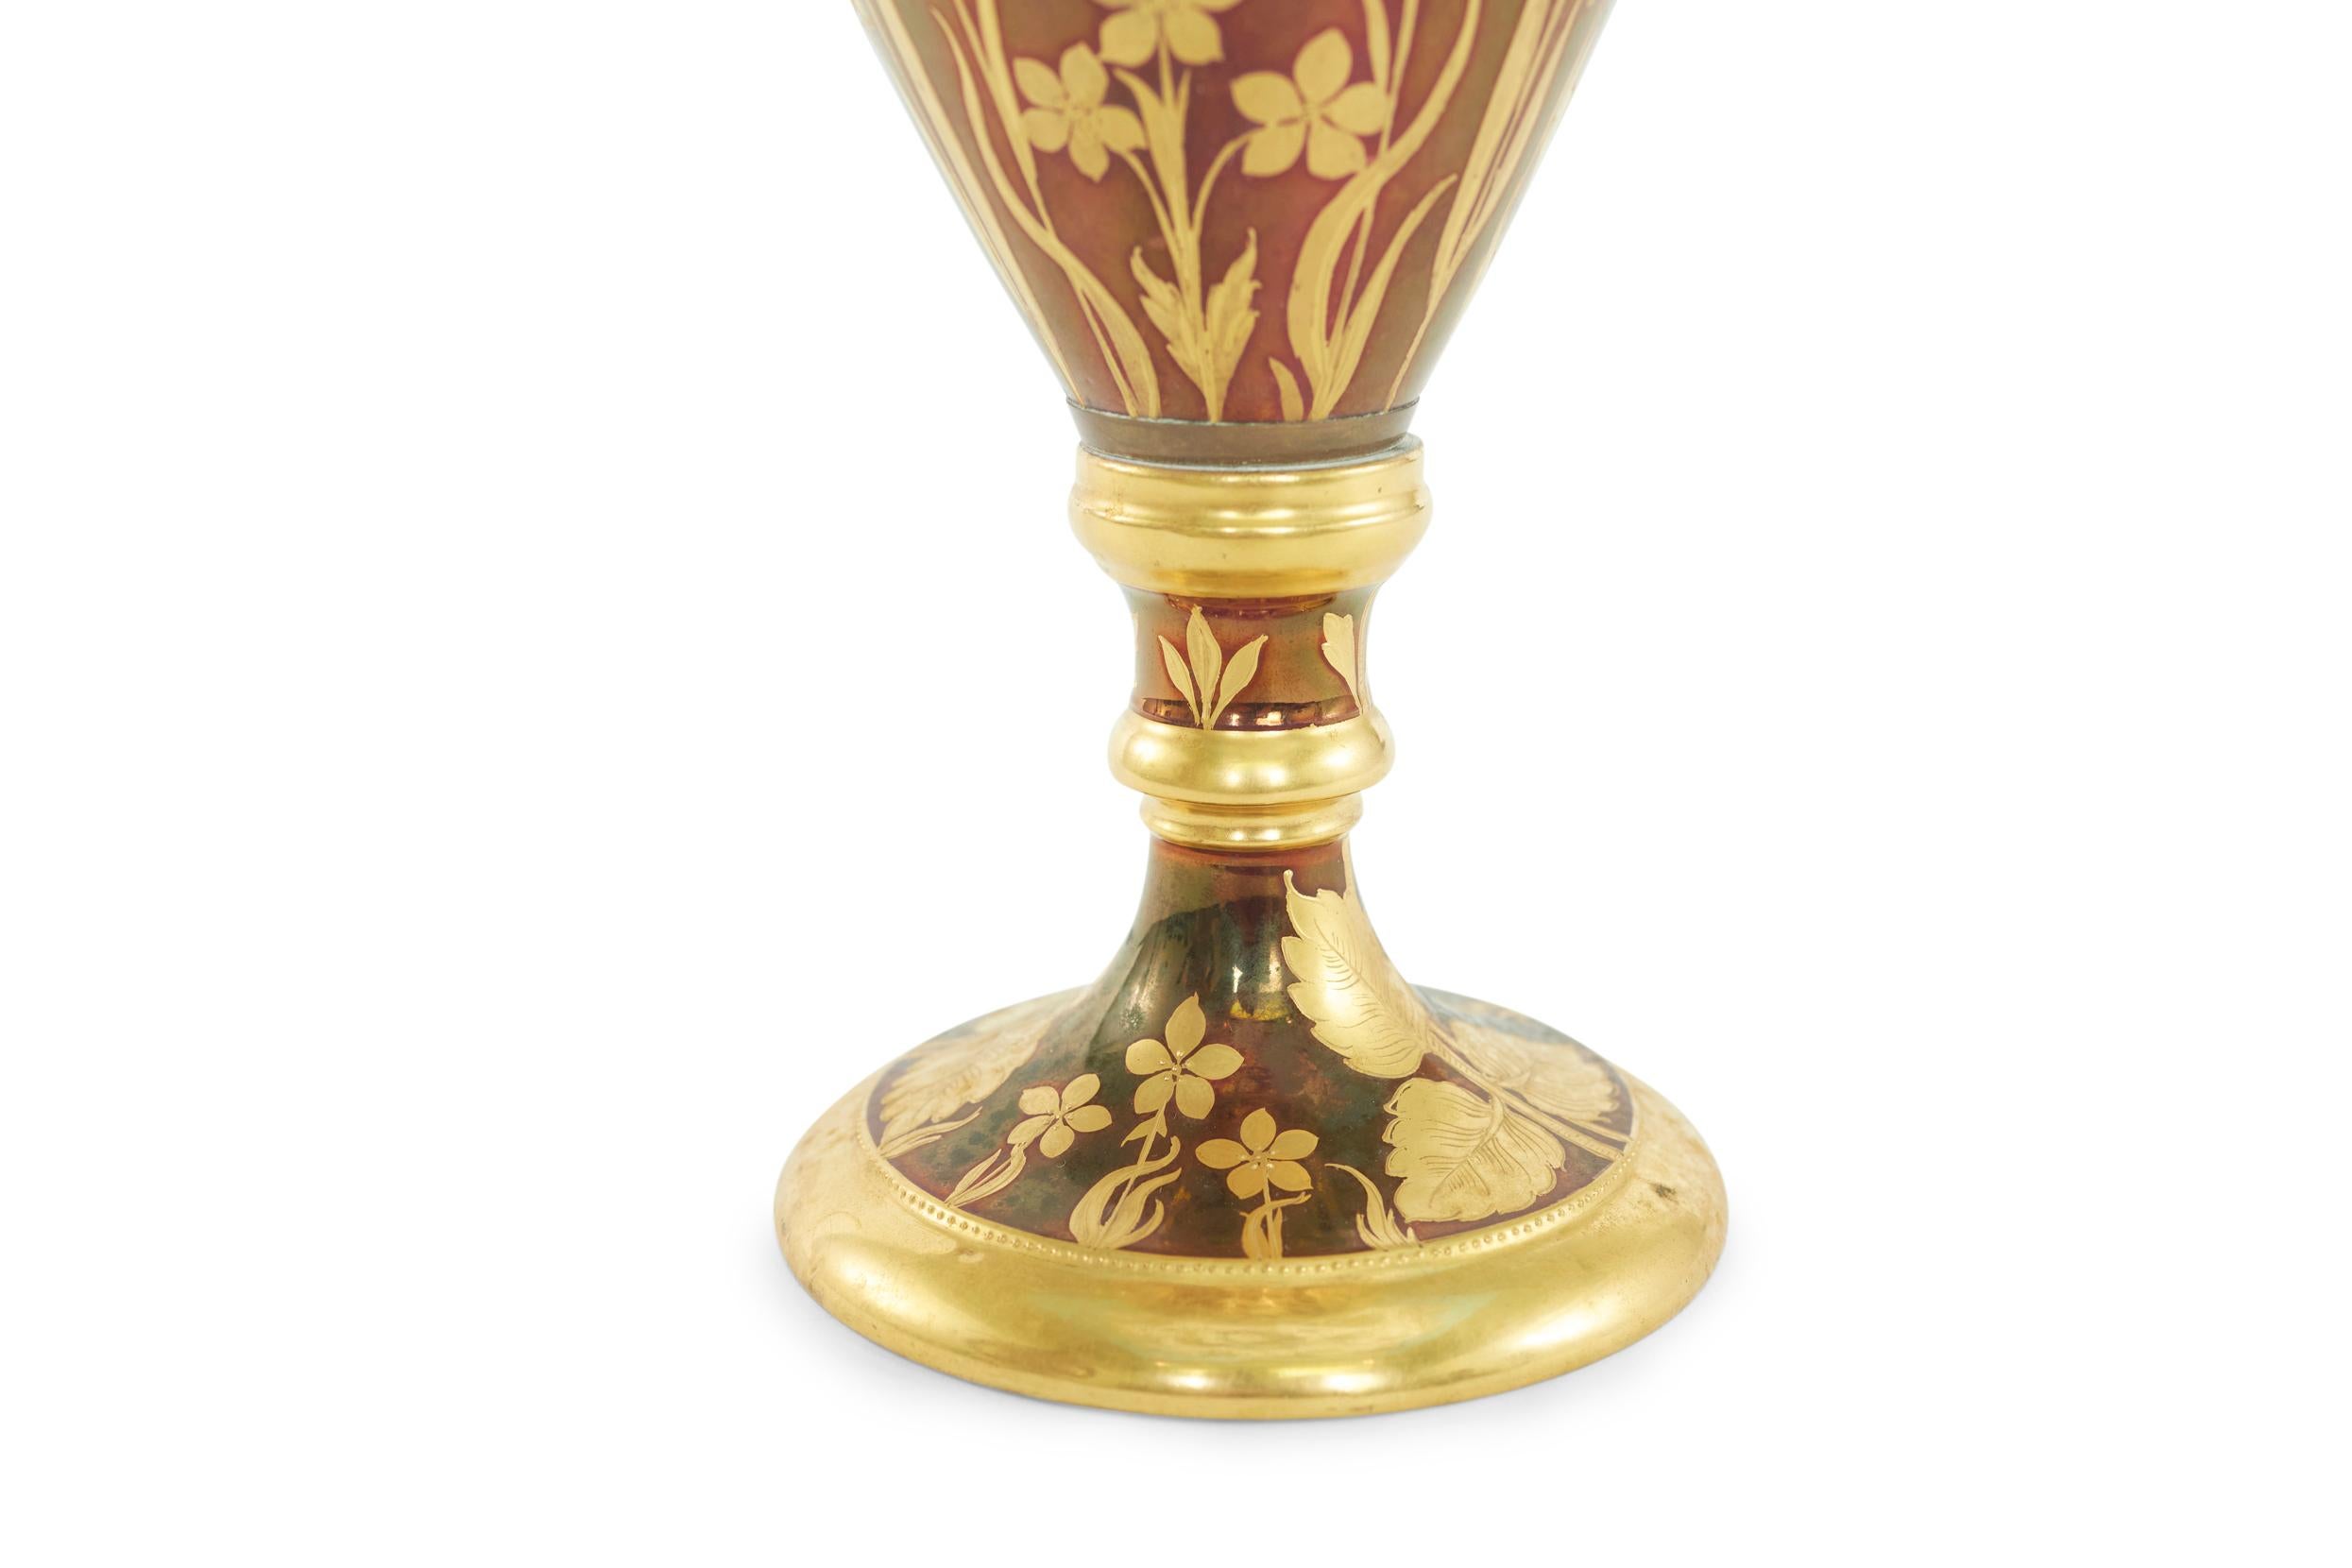 European Austrian Porcelain Tall Decorative Vase / Piece For Sale